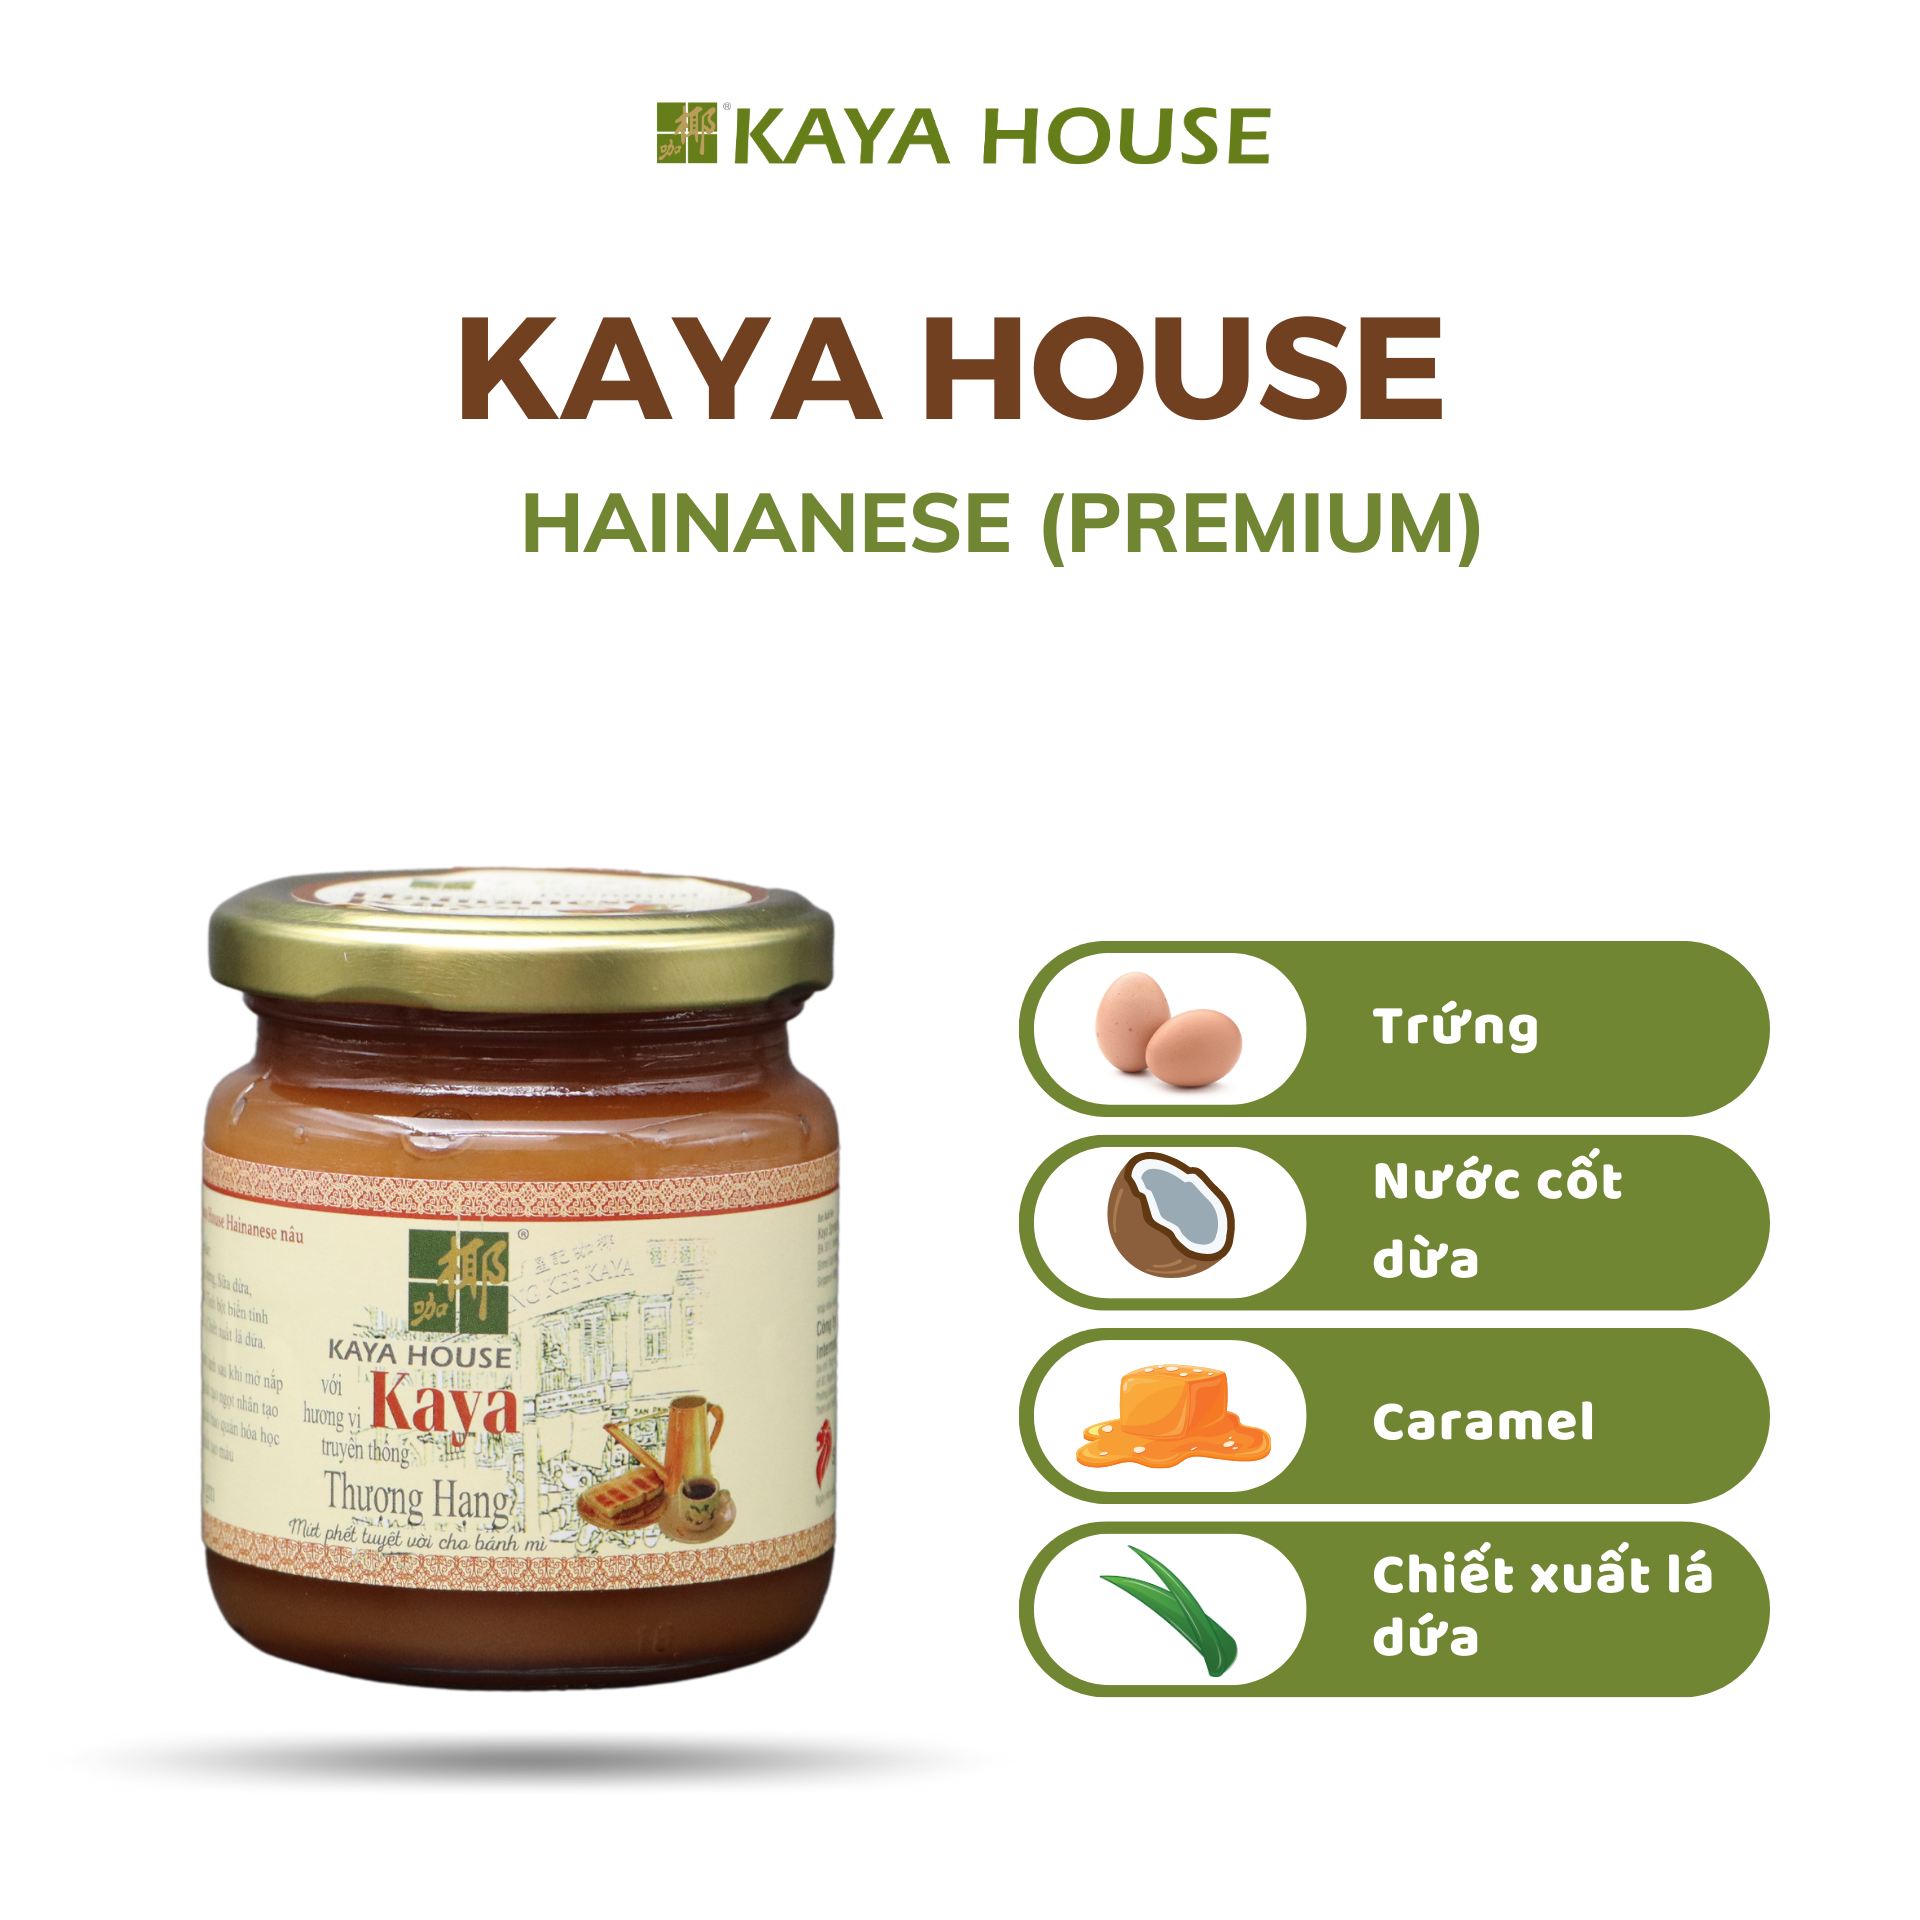 Bộ 2 hũ mứt Kaya Singapore Thượng hạng - Kaya House - Ăn kèm với Sandwich, làm nguyên liệu nấu ăn